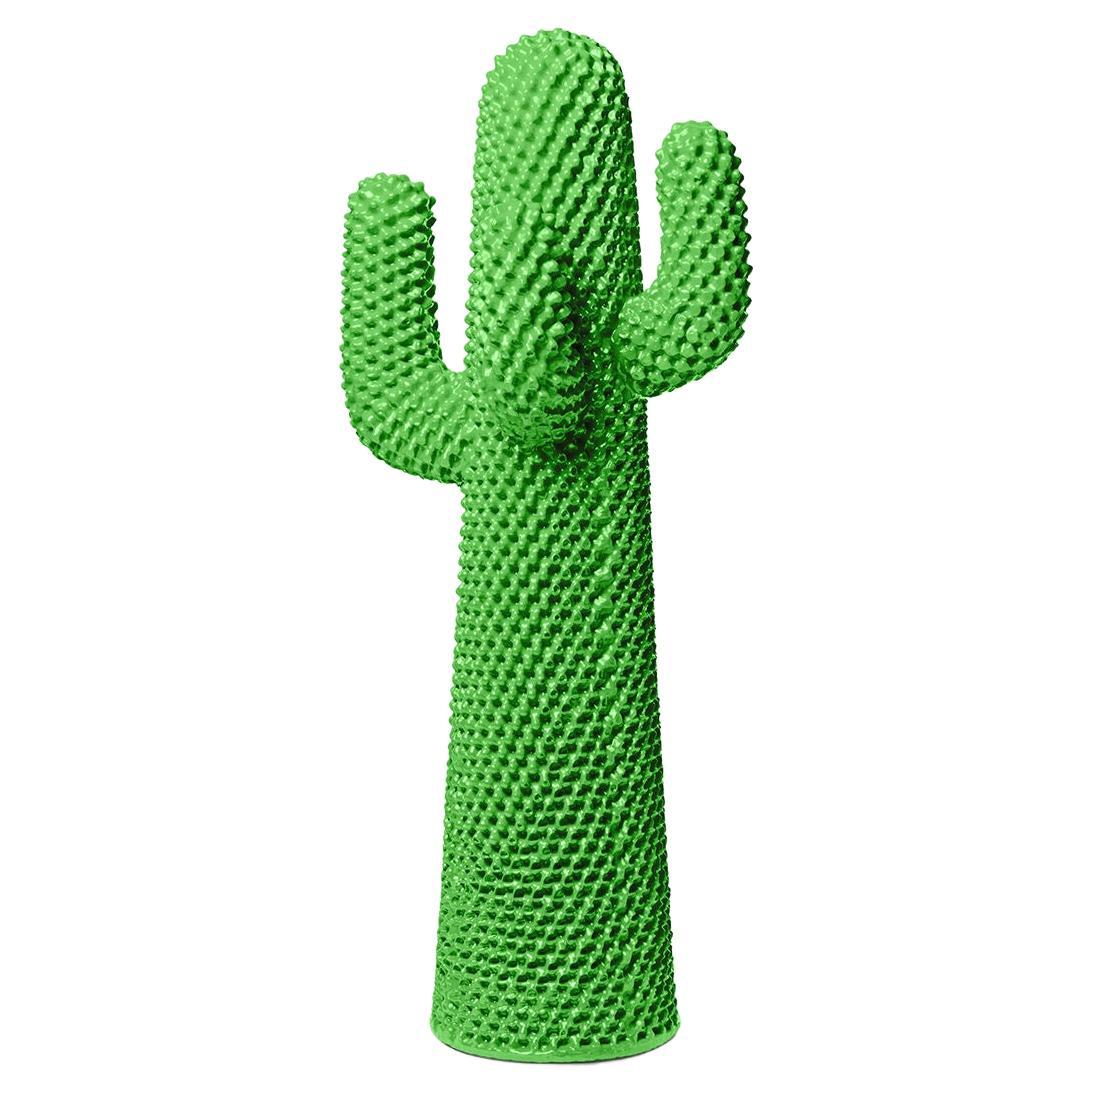 Gufram Another Gufram Another Green Cactus Mantelständer von Drocco/Mello